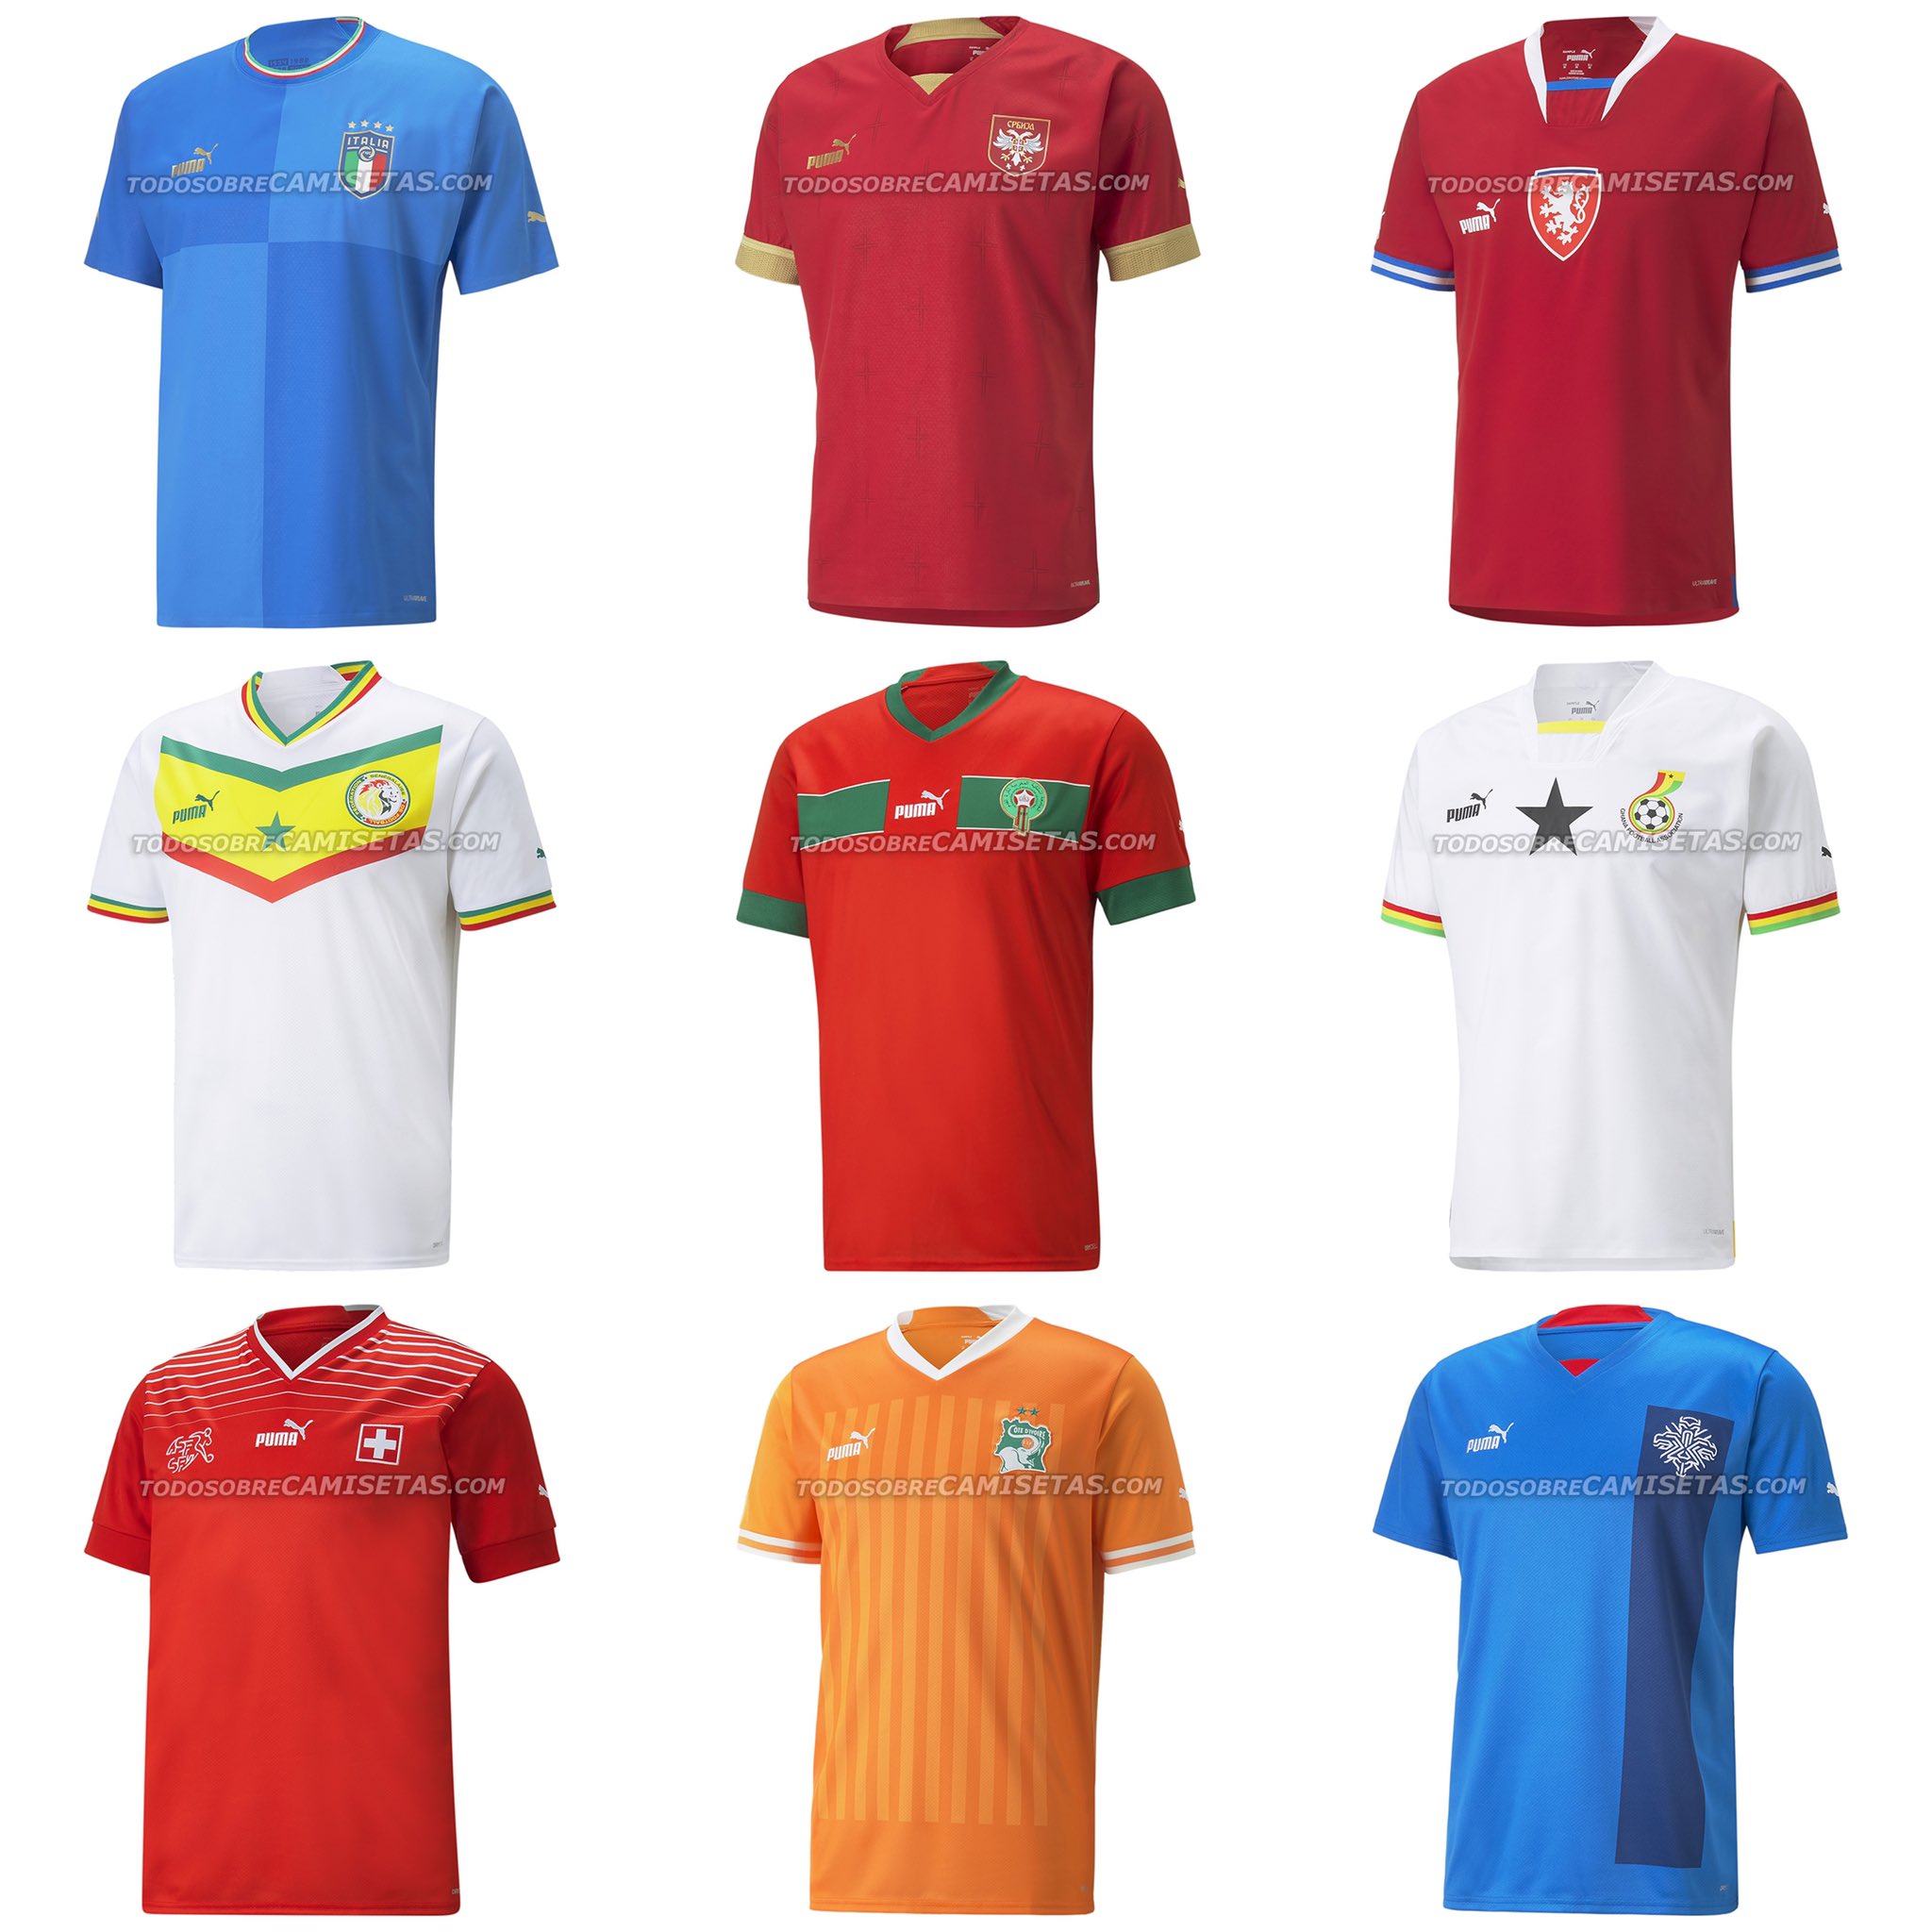 Le maillot du Sénégal, Maroc et Ghana pour la Coupe du monde (Photos)